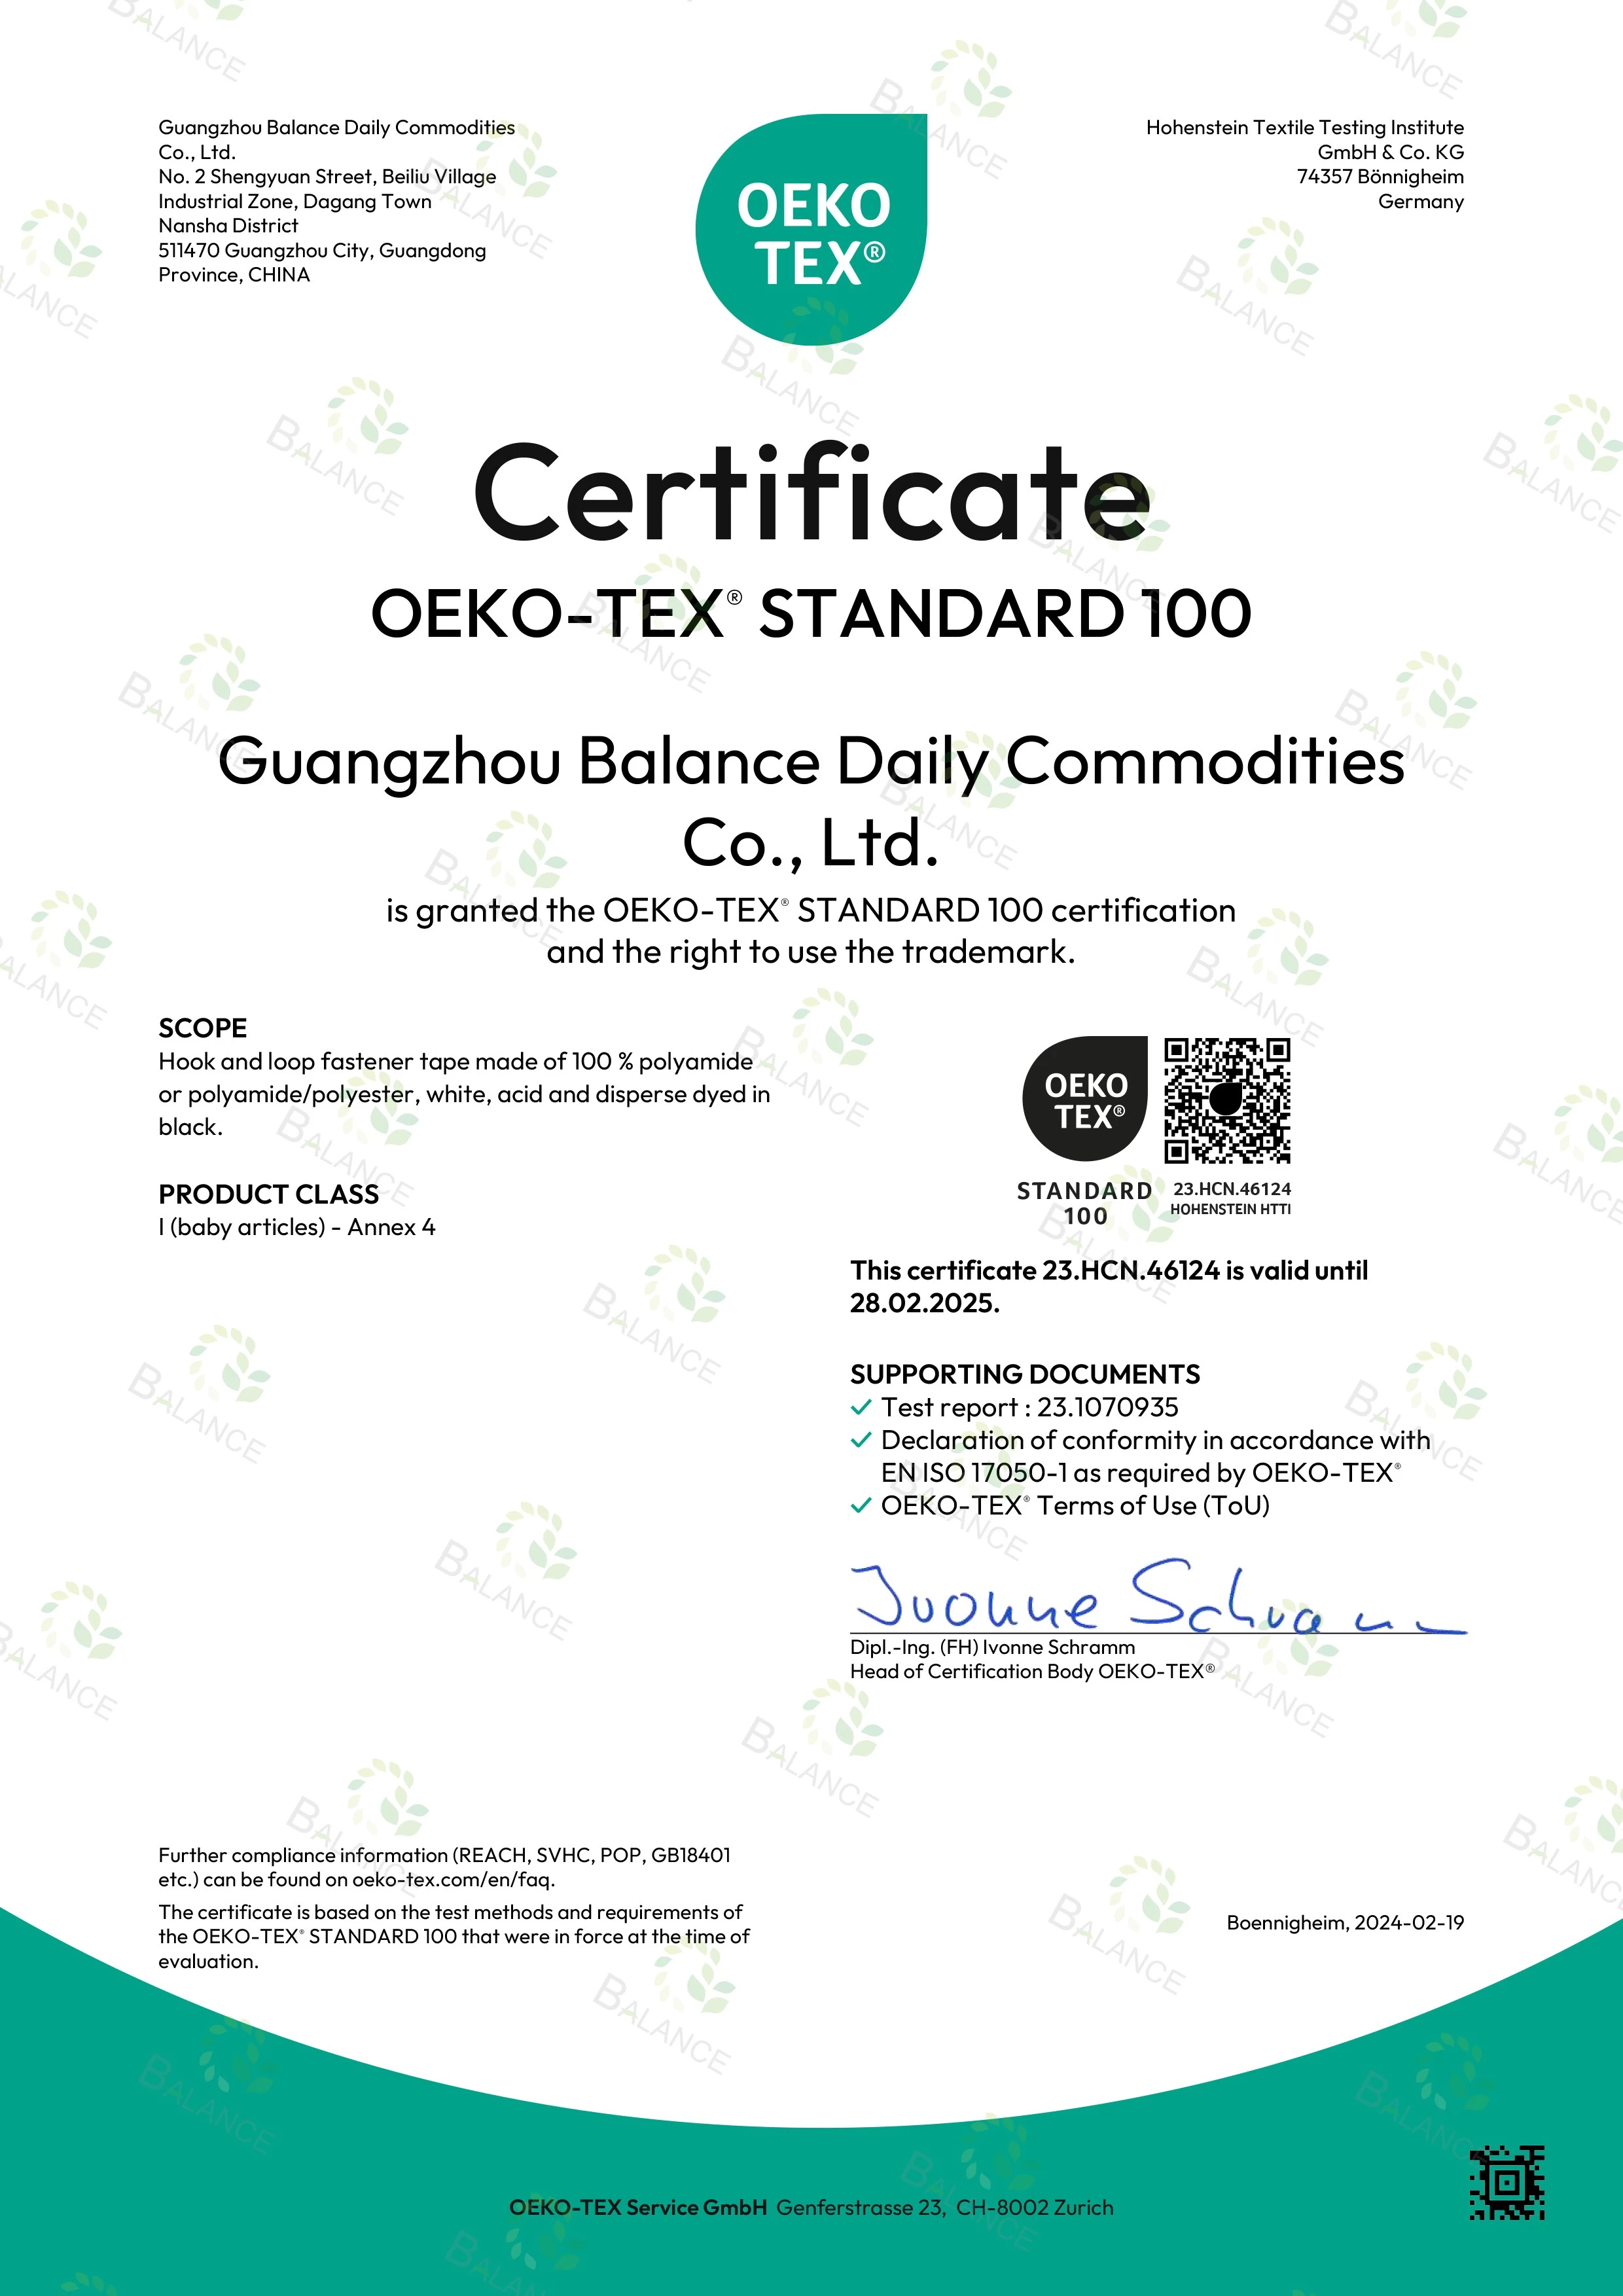 令人兴奋的消息！我们的粘扣带已获得 OEKO-TEX' STANDARD 100 认证